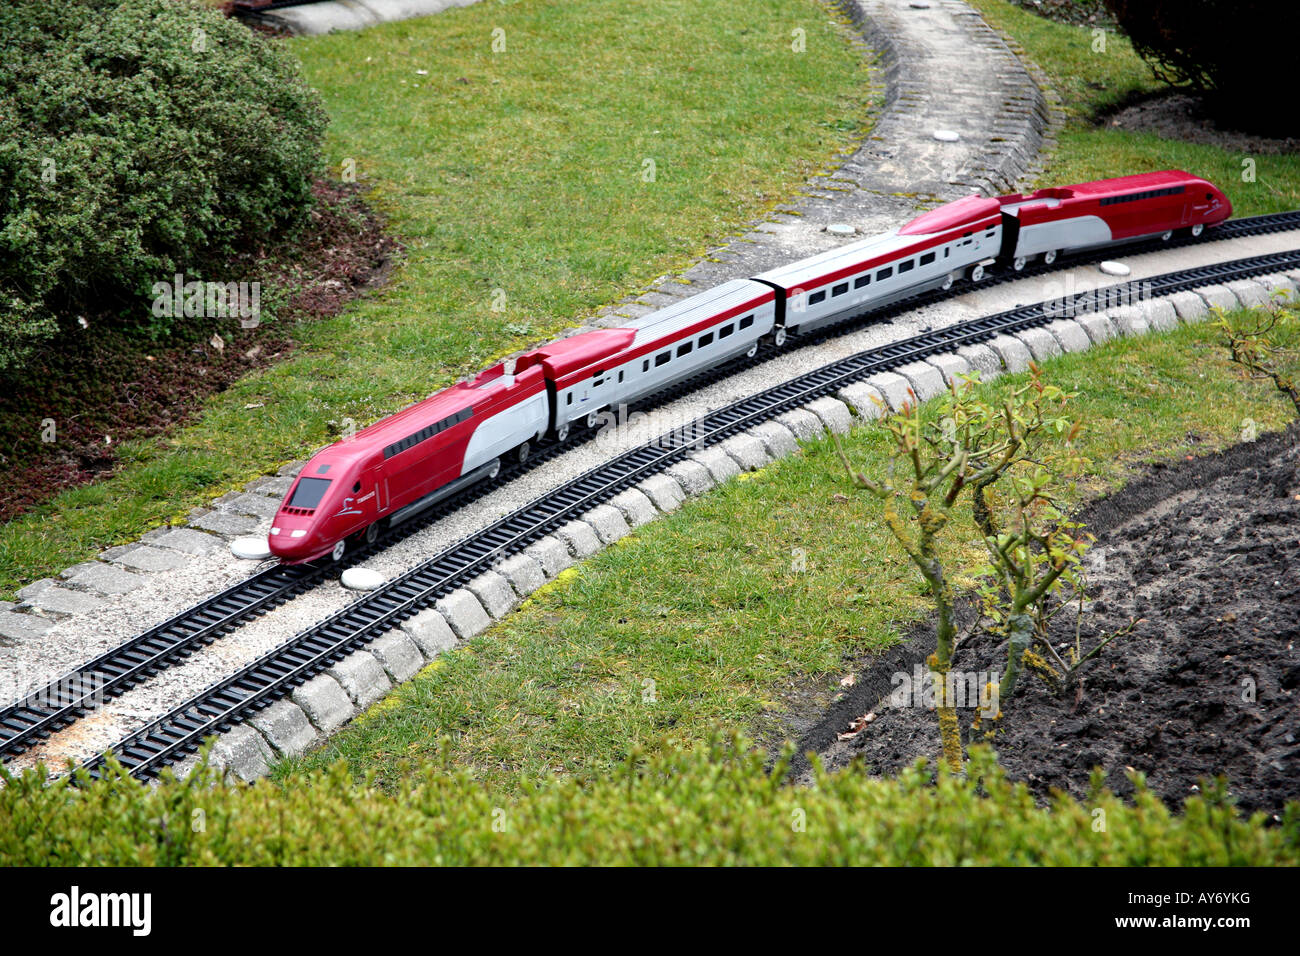 Modello Thalys treno ad alta velocità nel modello Mini-Europe village, Bruxelles Foto Stock